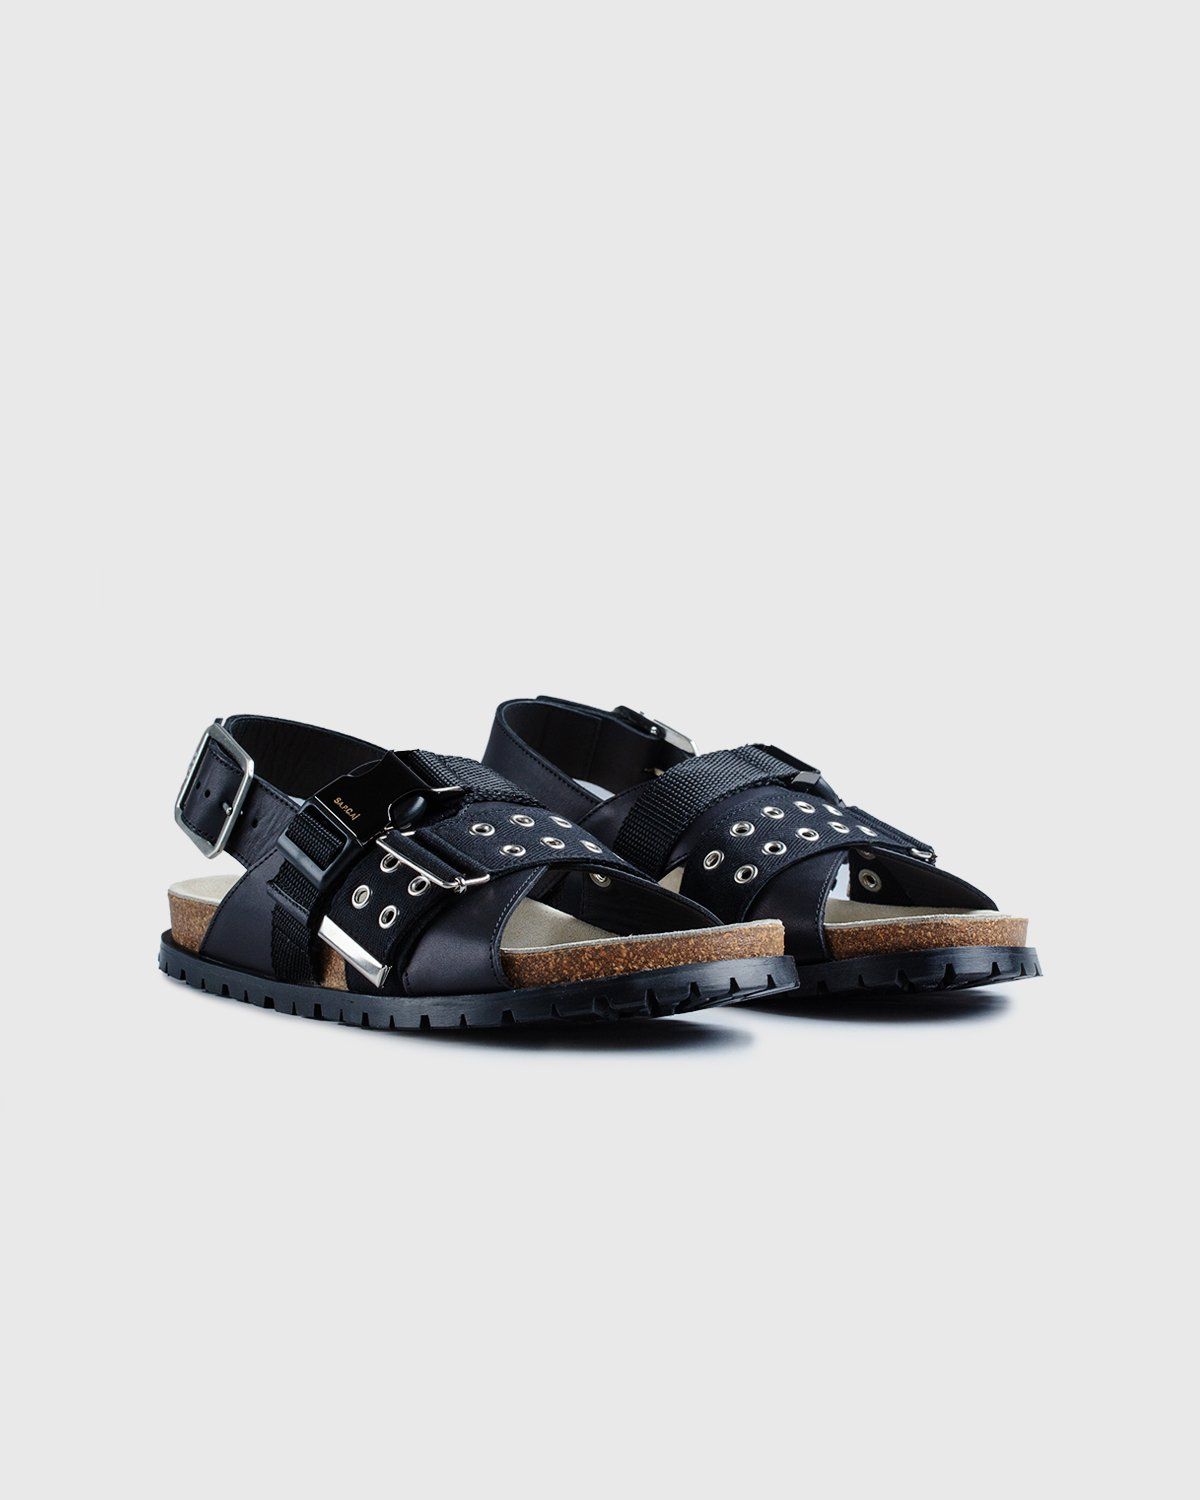 A.P.C. x Sacai – Sandals Black - Sandals - Black - Image 3